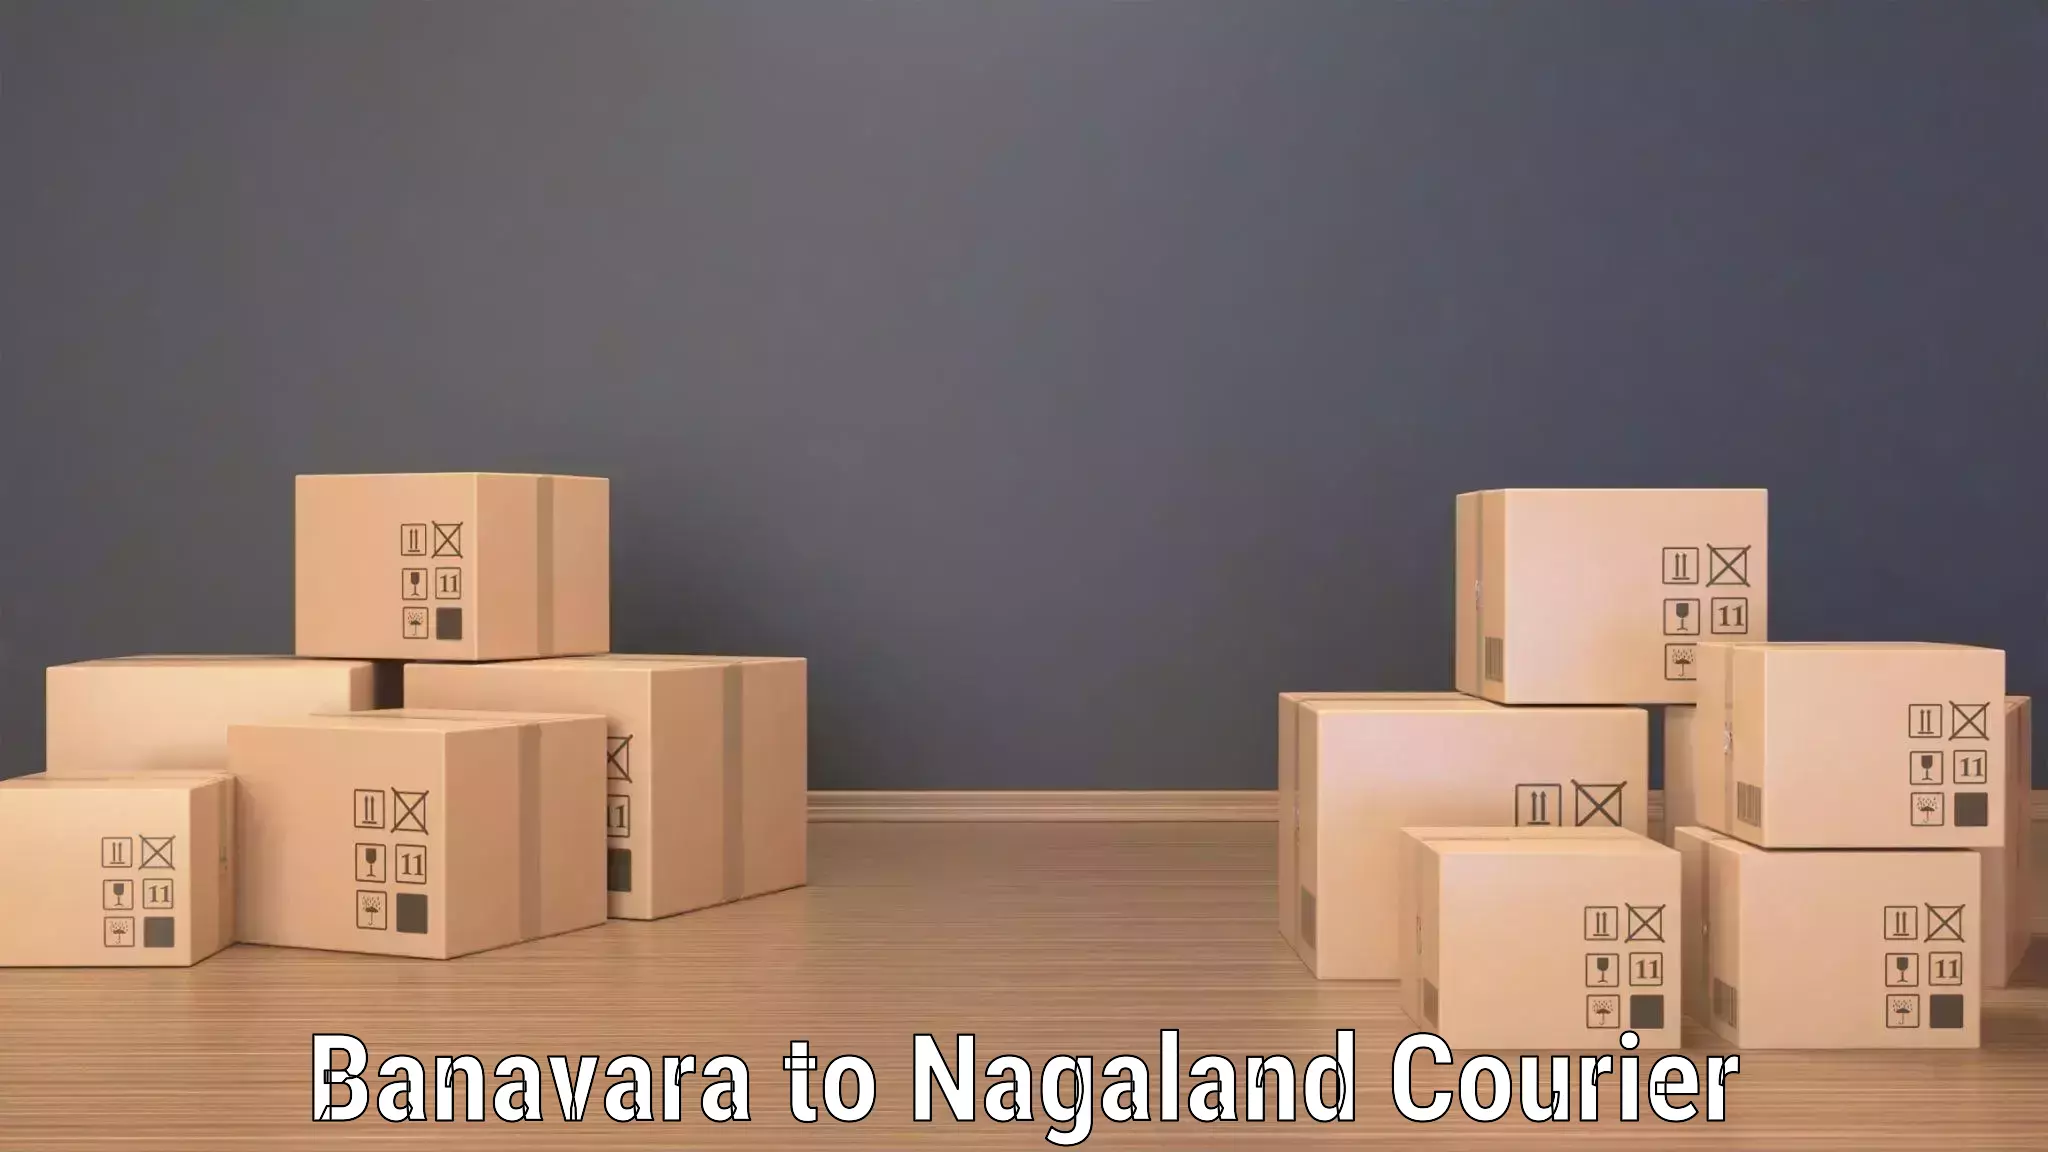 Same-day delivery solutions Banavara to NIT Nagaland